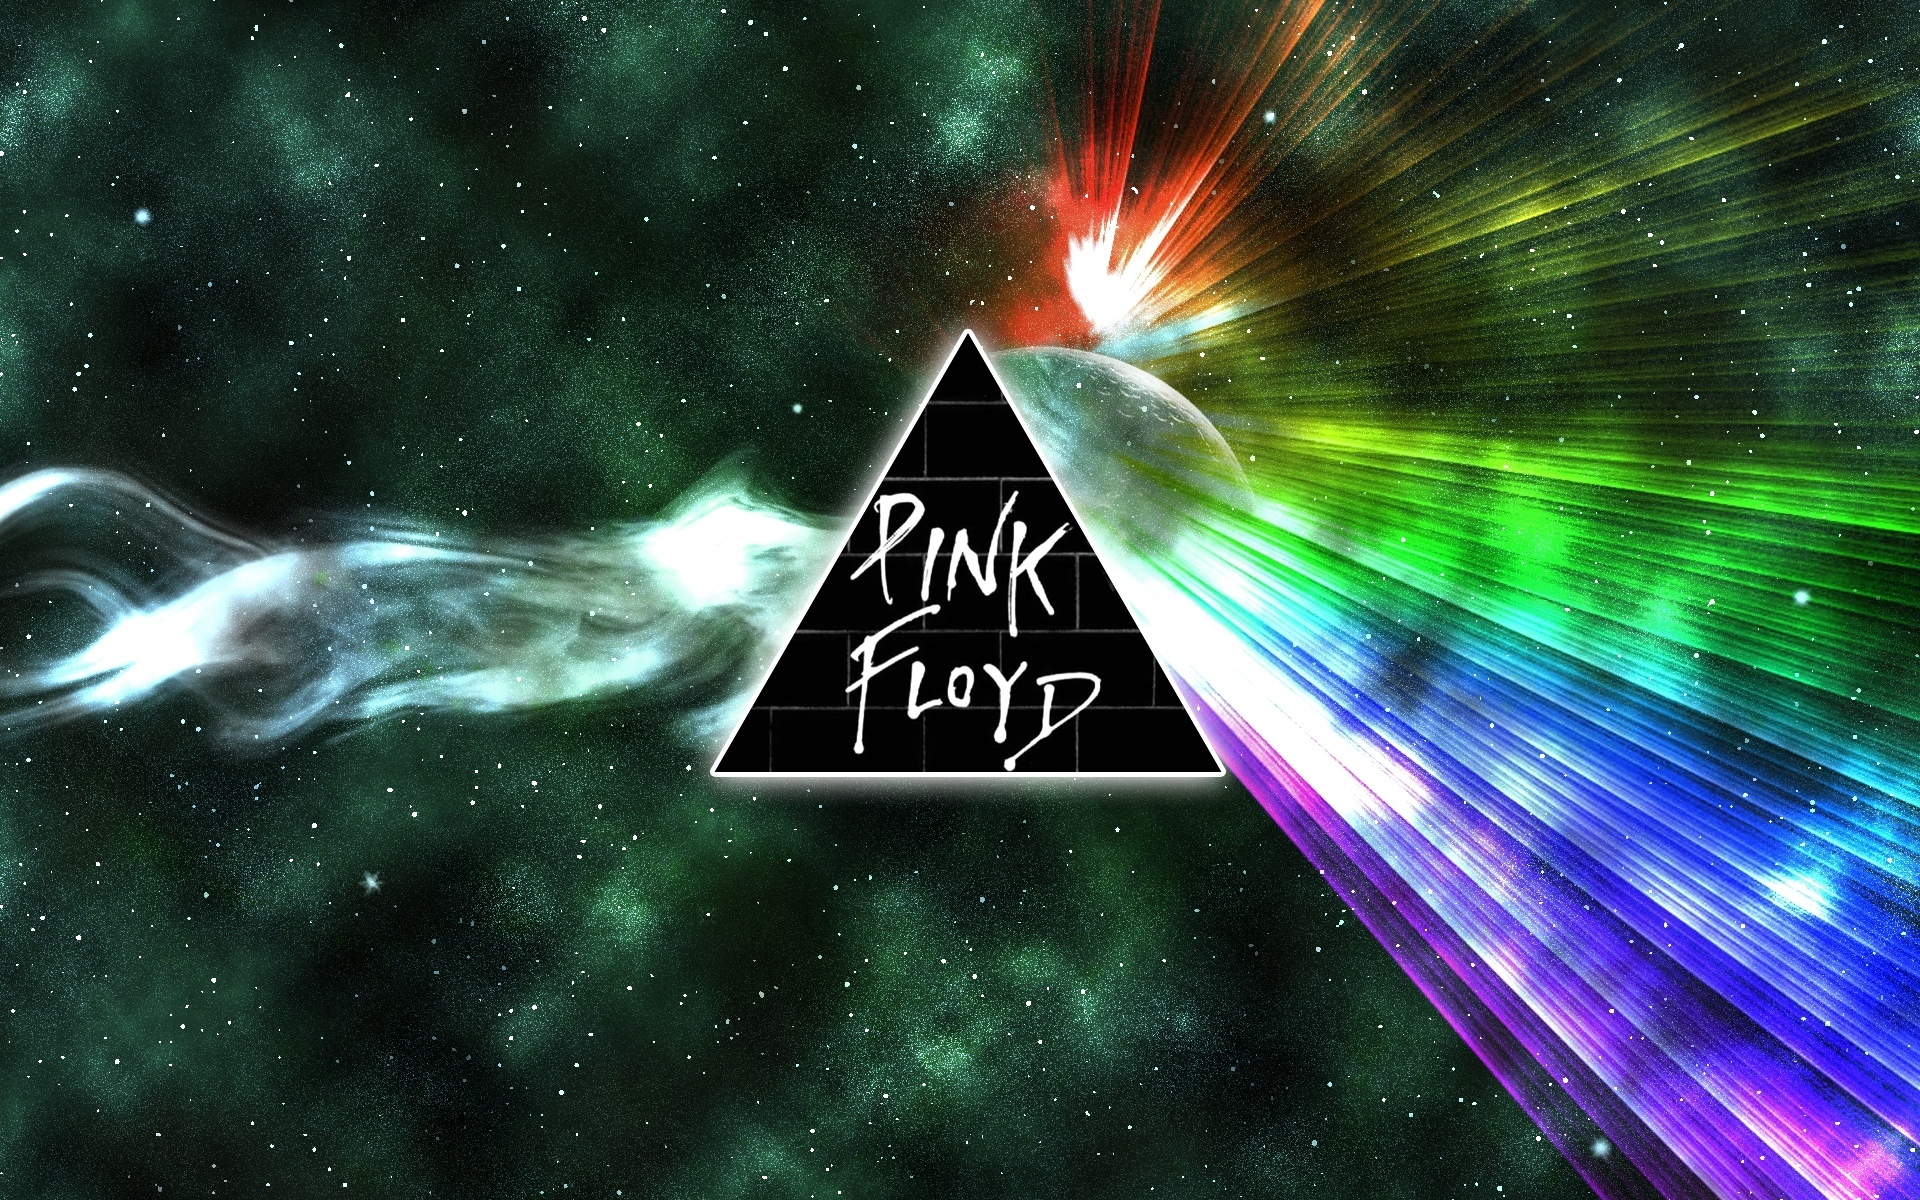 Pink Floyd pink floyd 10566727 1920 1200jpg